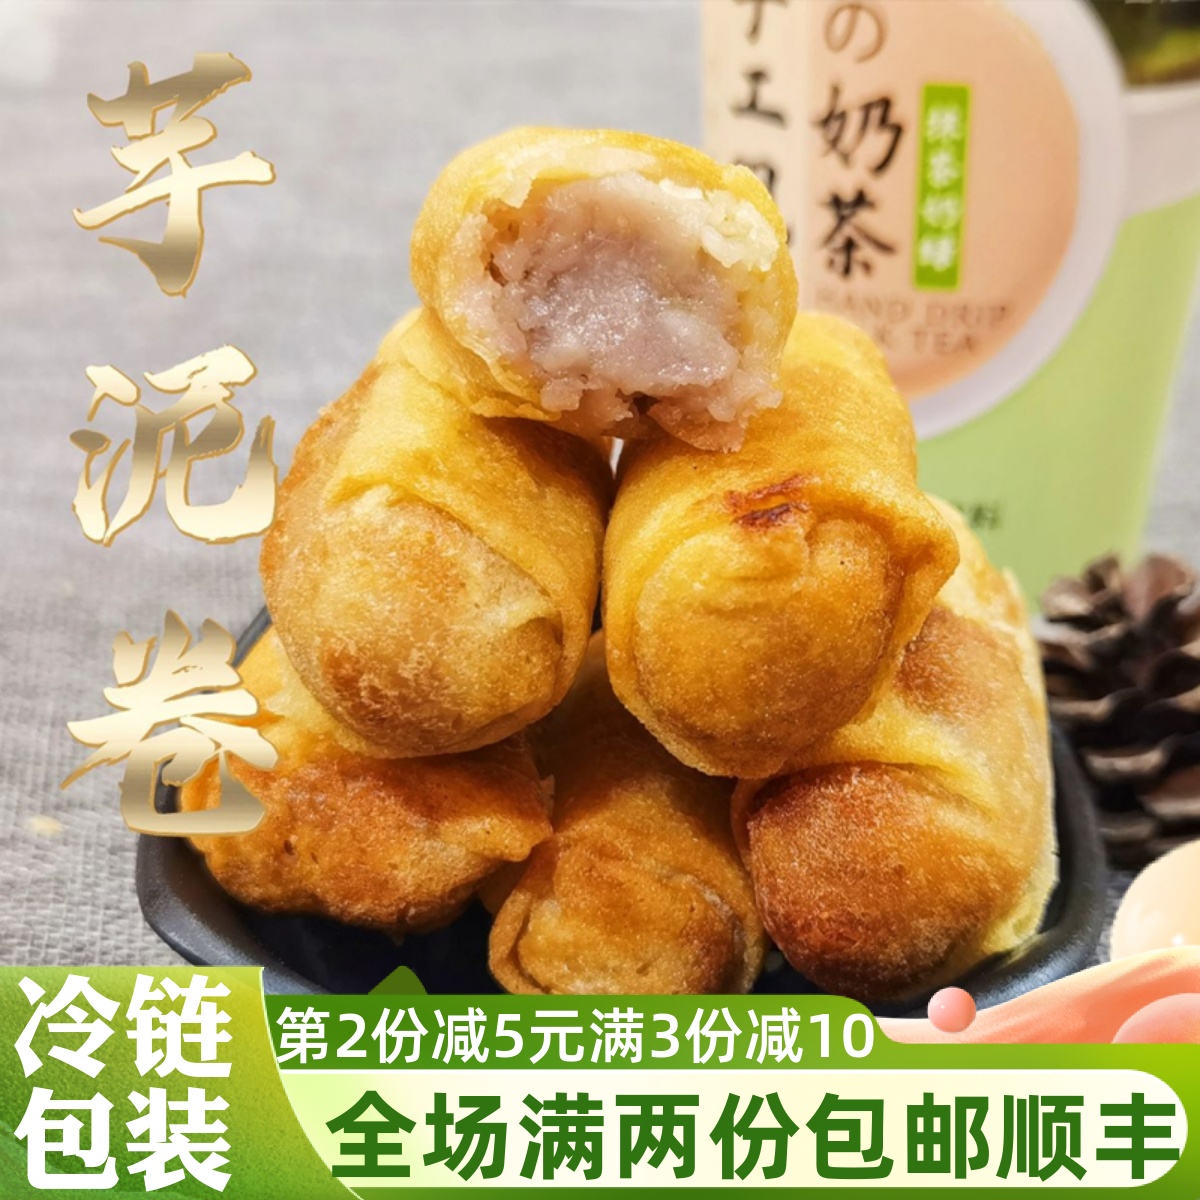 闽南芋卷芋泥卷油炸小吃泉州特产润饼芋头春卷甜品素食自助餐食材